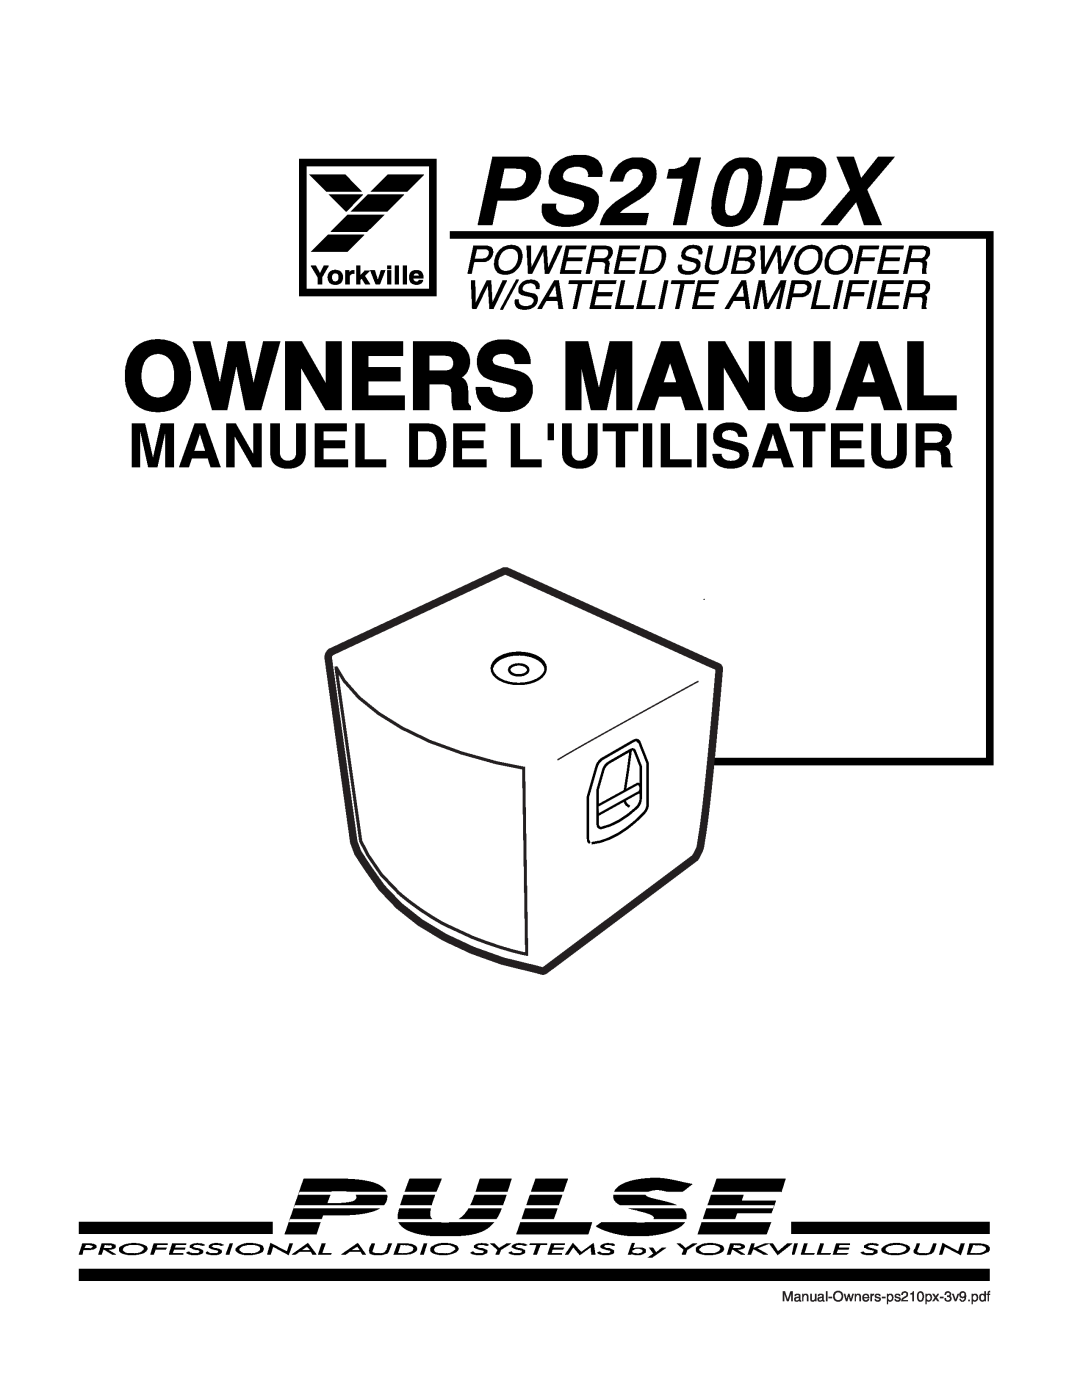 Yorkville Sound PS210PX manual Manuel De Lutilisateur 